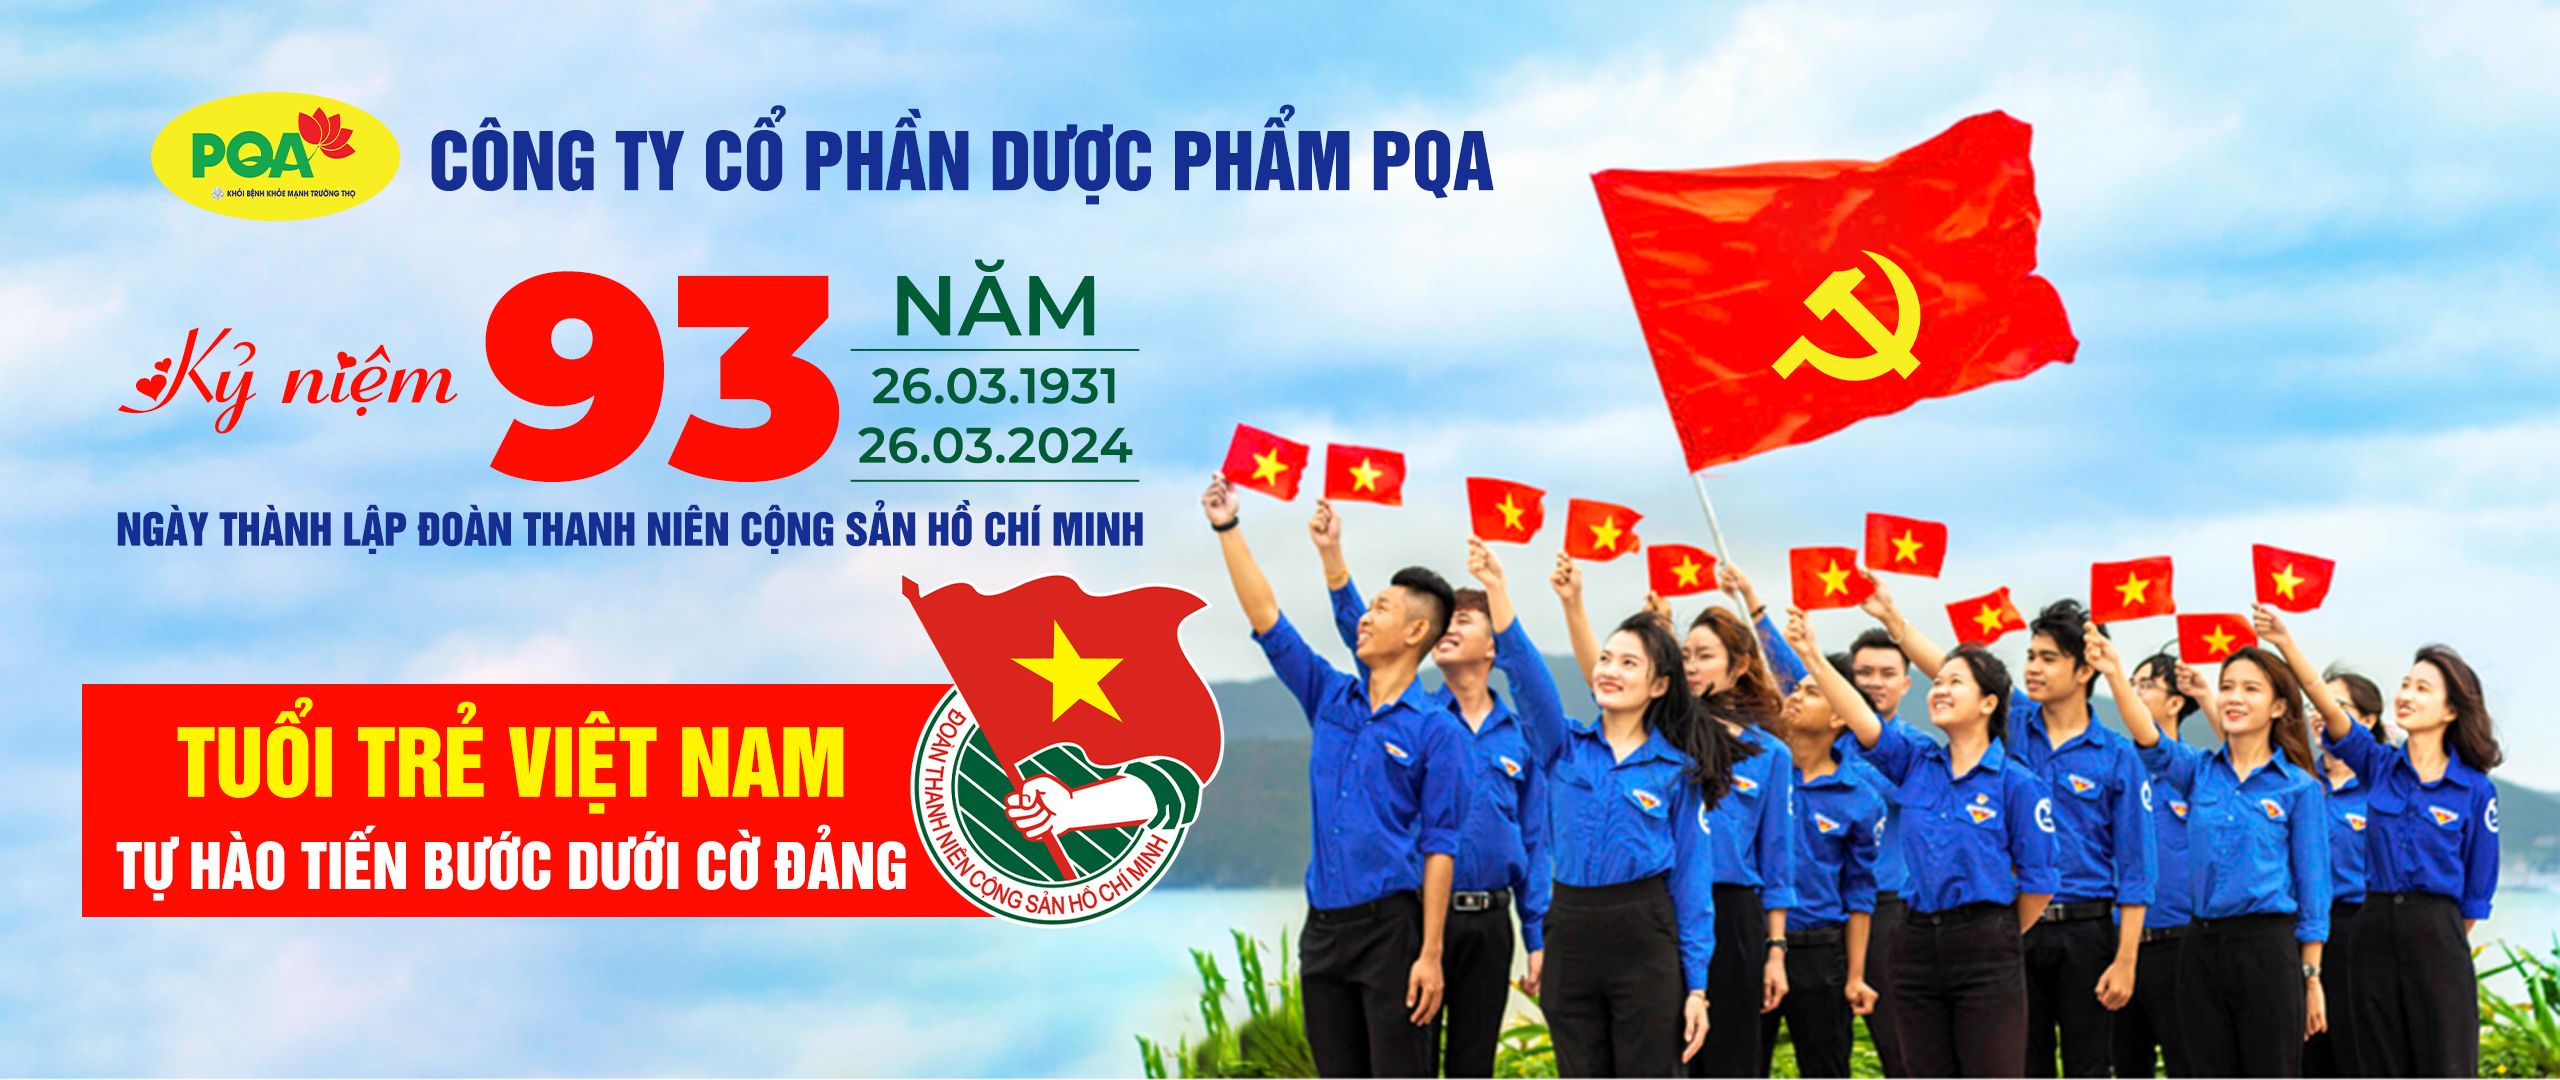 Đoàn thanh niên cộng sản Hồ Chí Minh